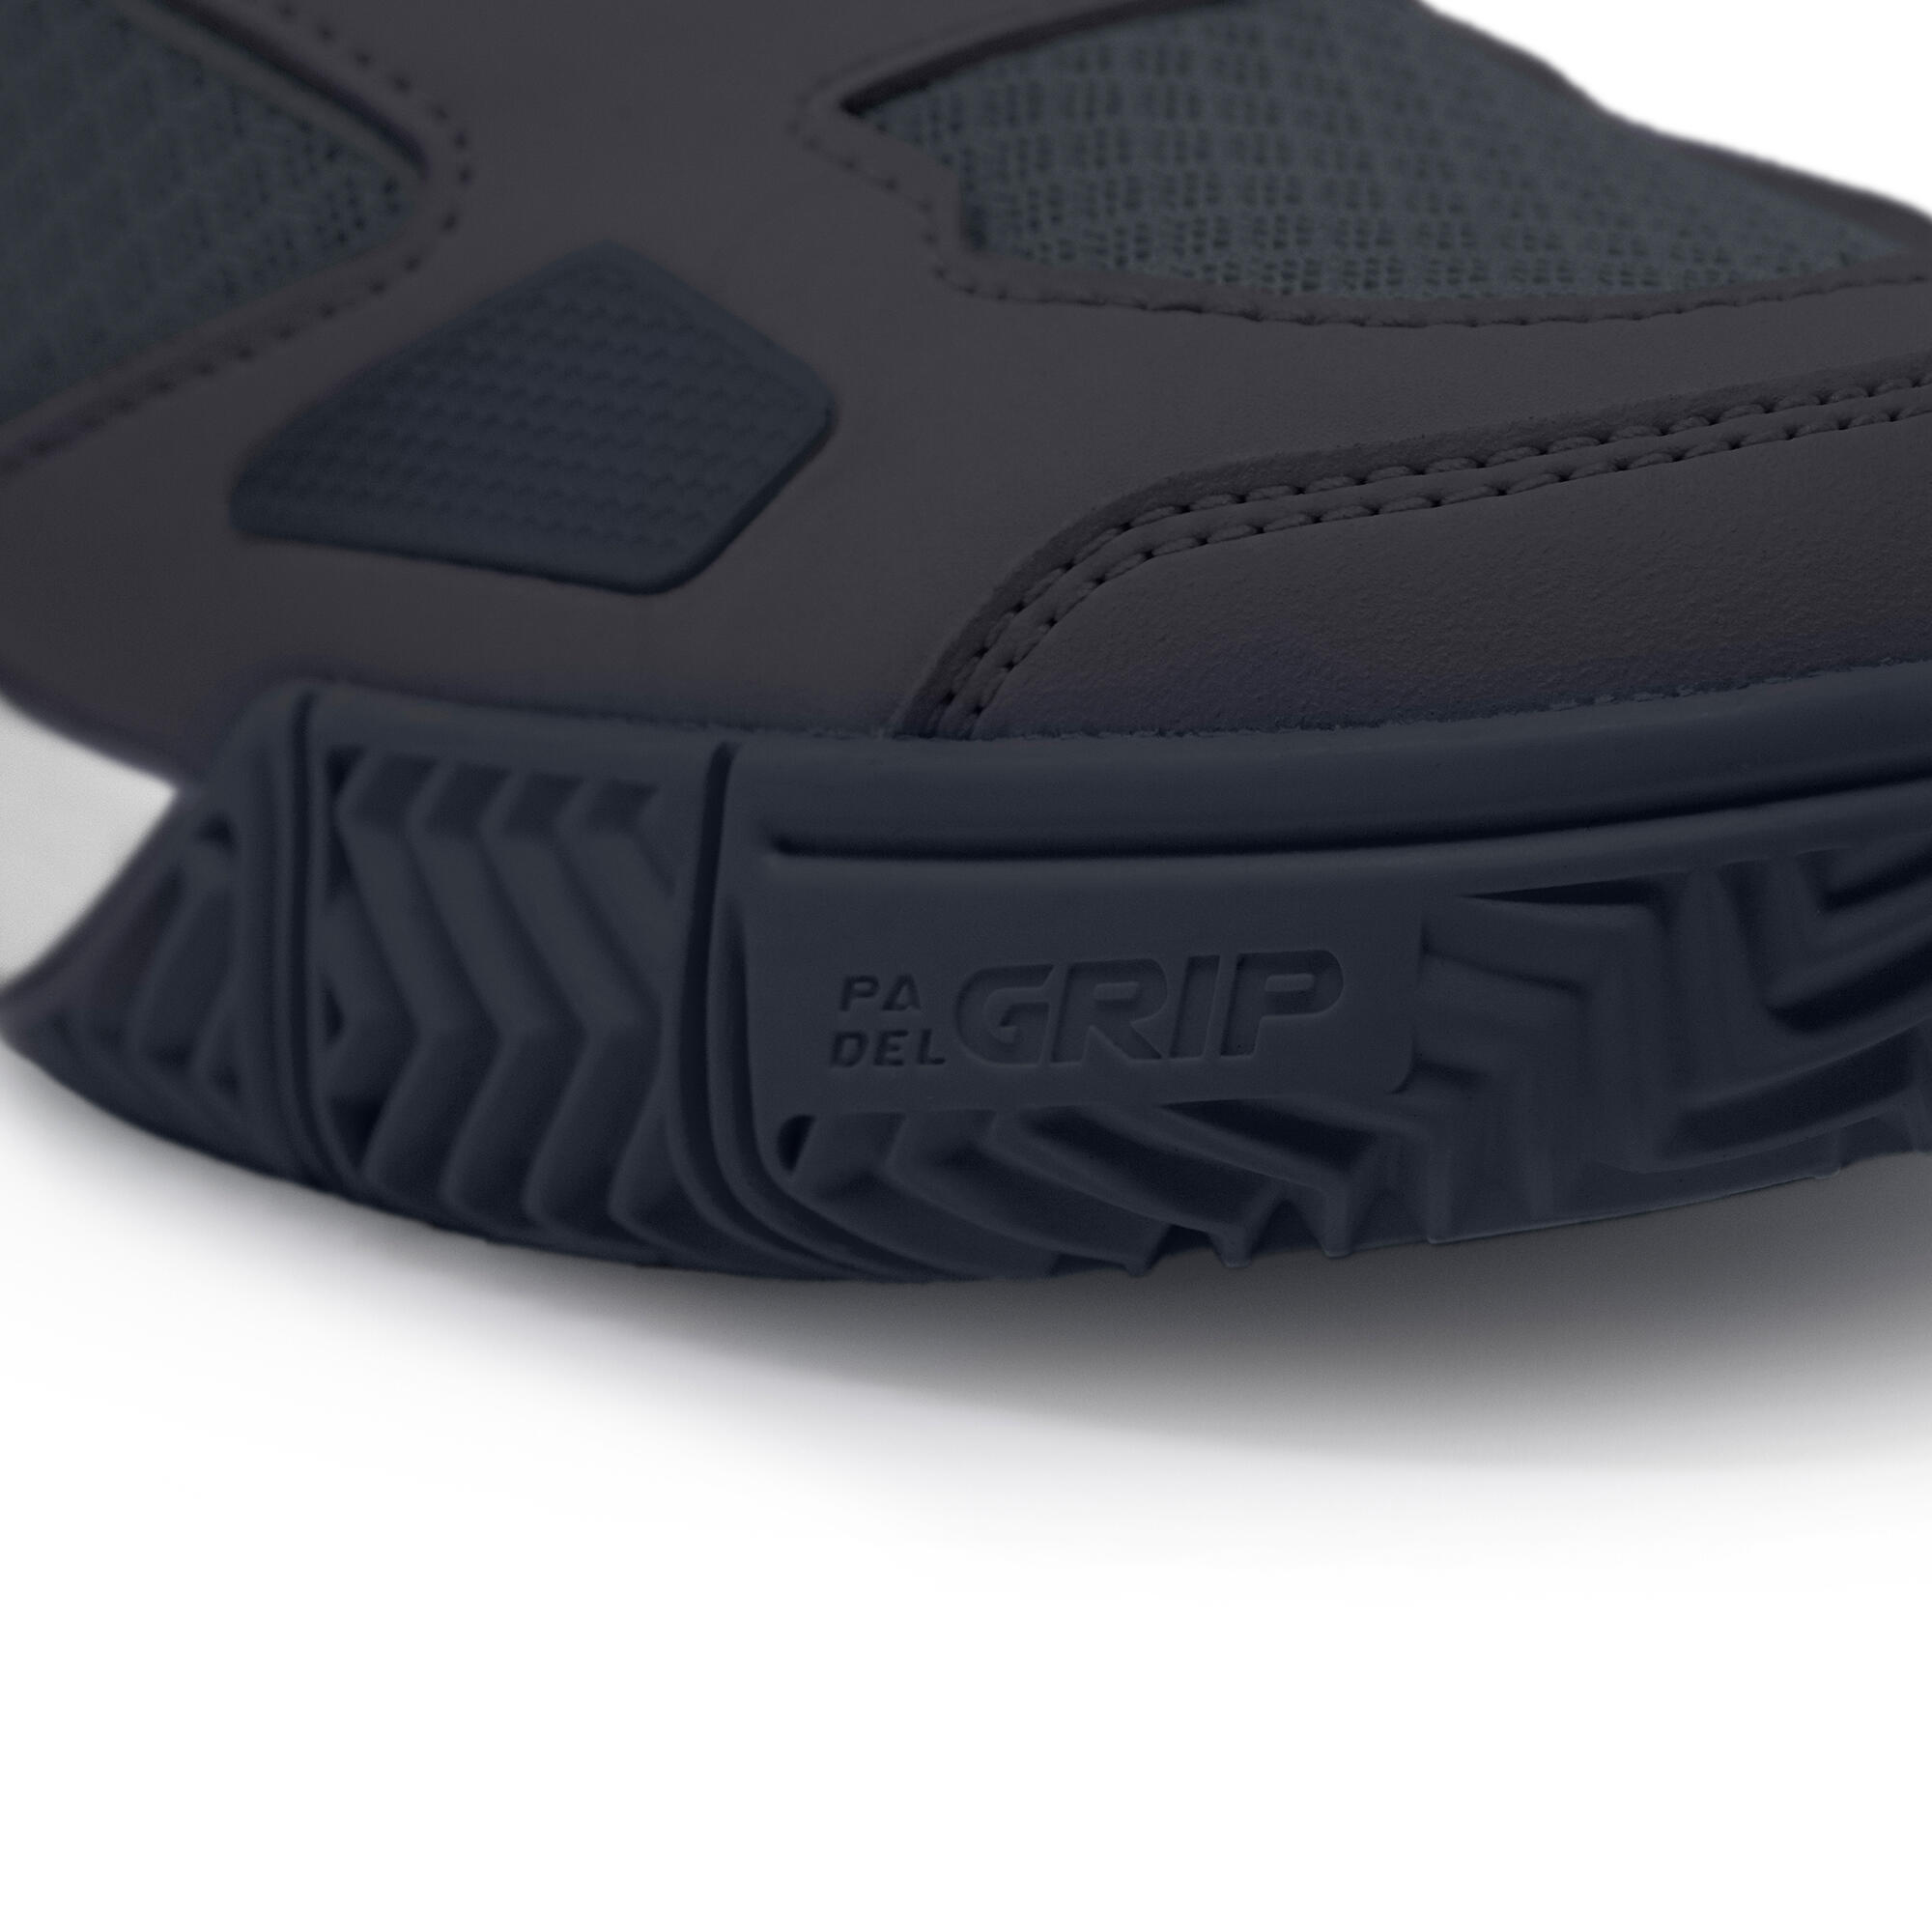 Men's Padel Shoes PS 500 - Grey/Black 3/9